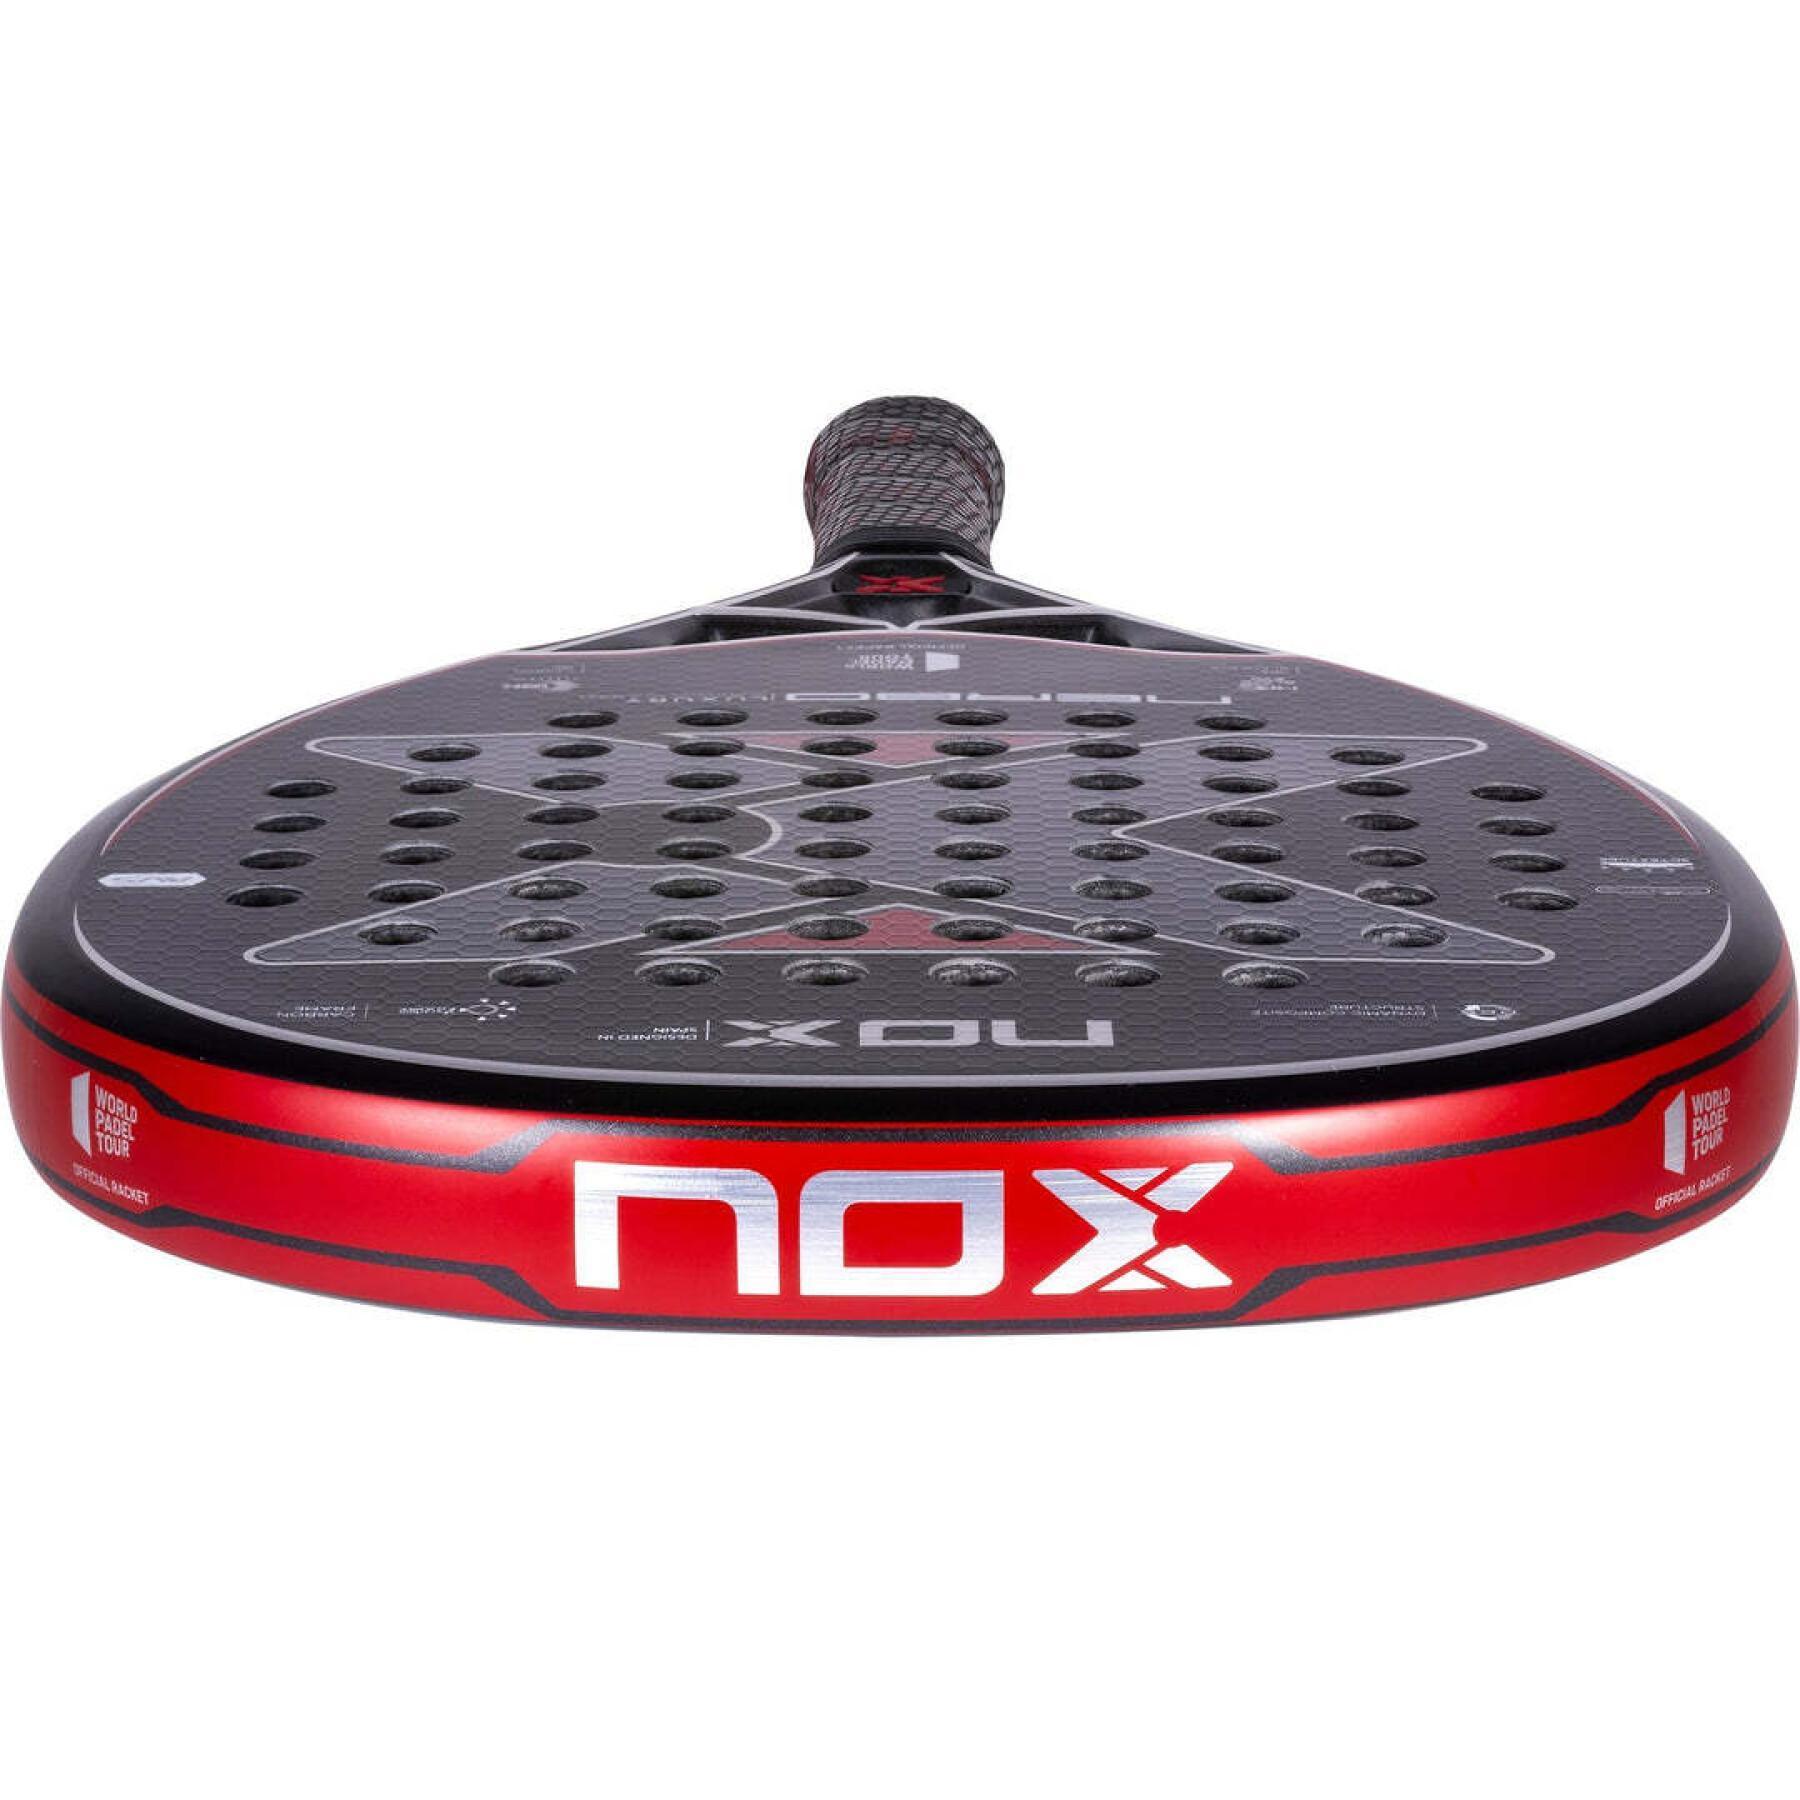 Racchetta da padel Nox Nerbo WPT Luxury Series